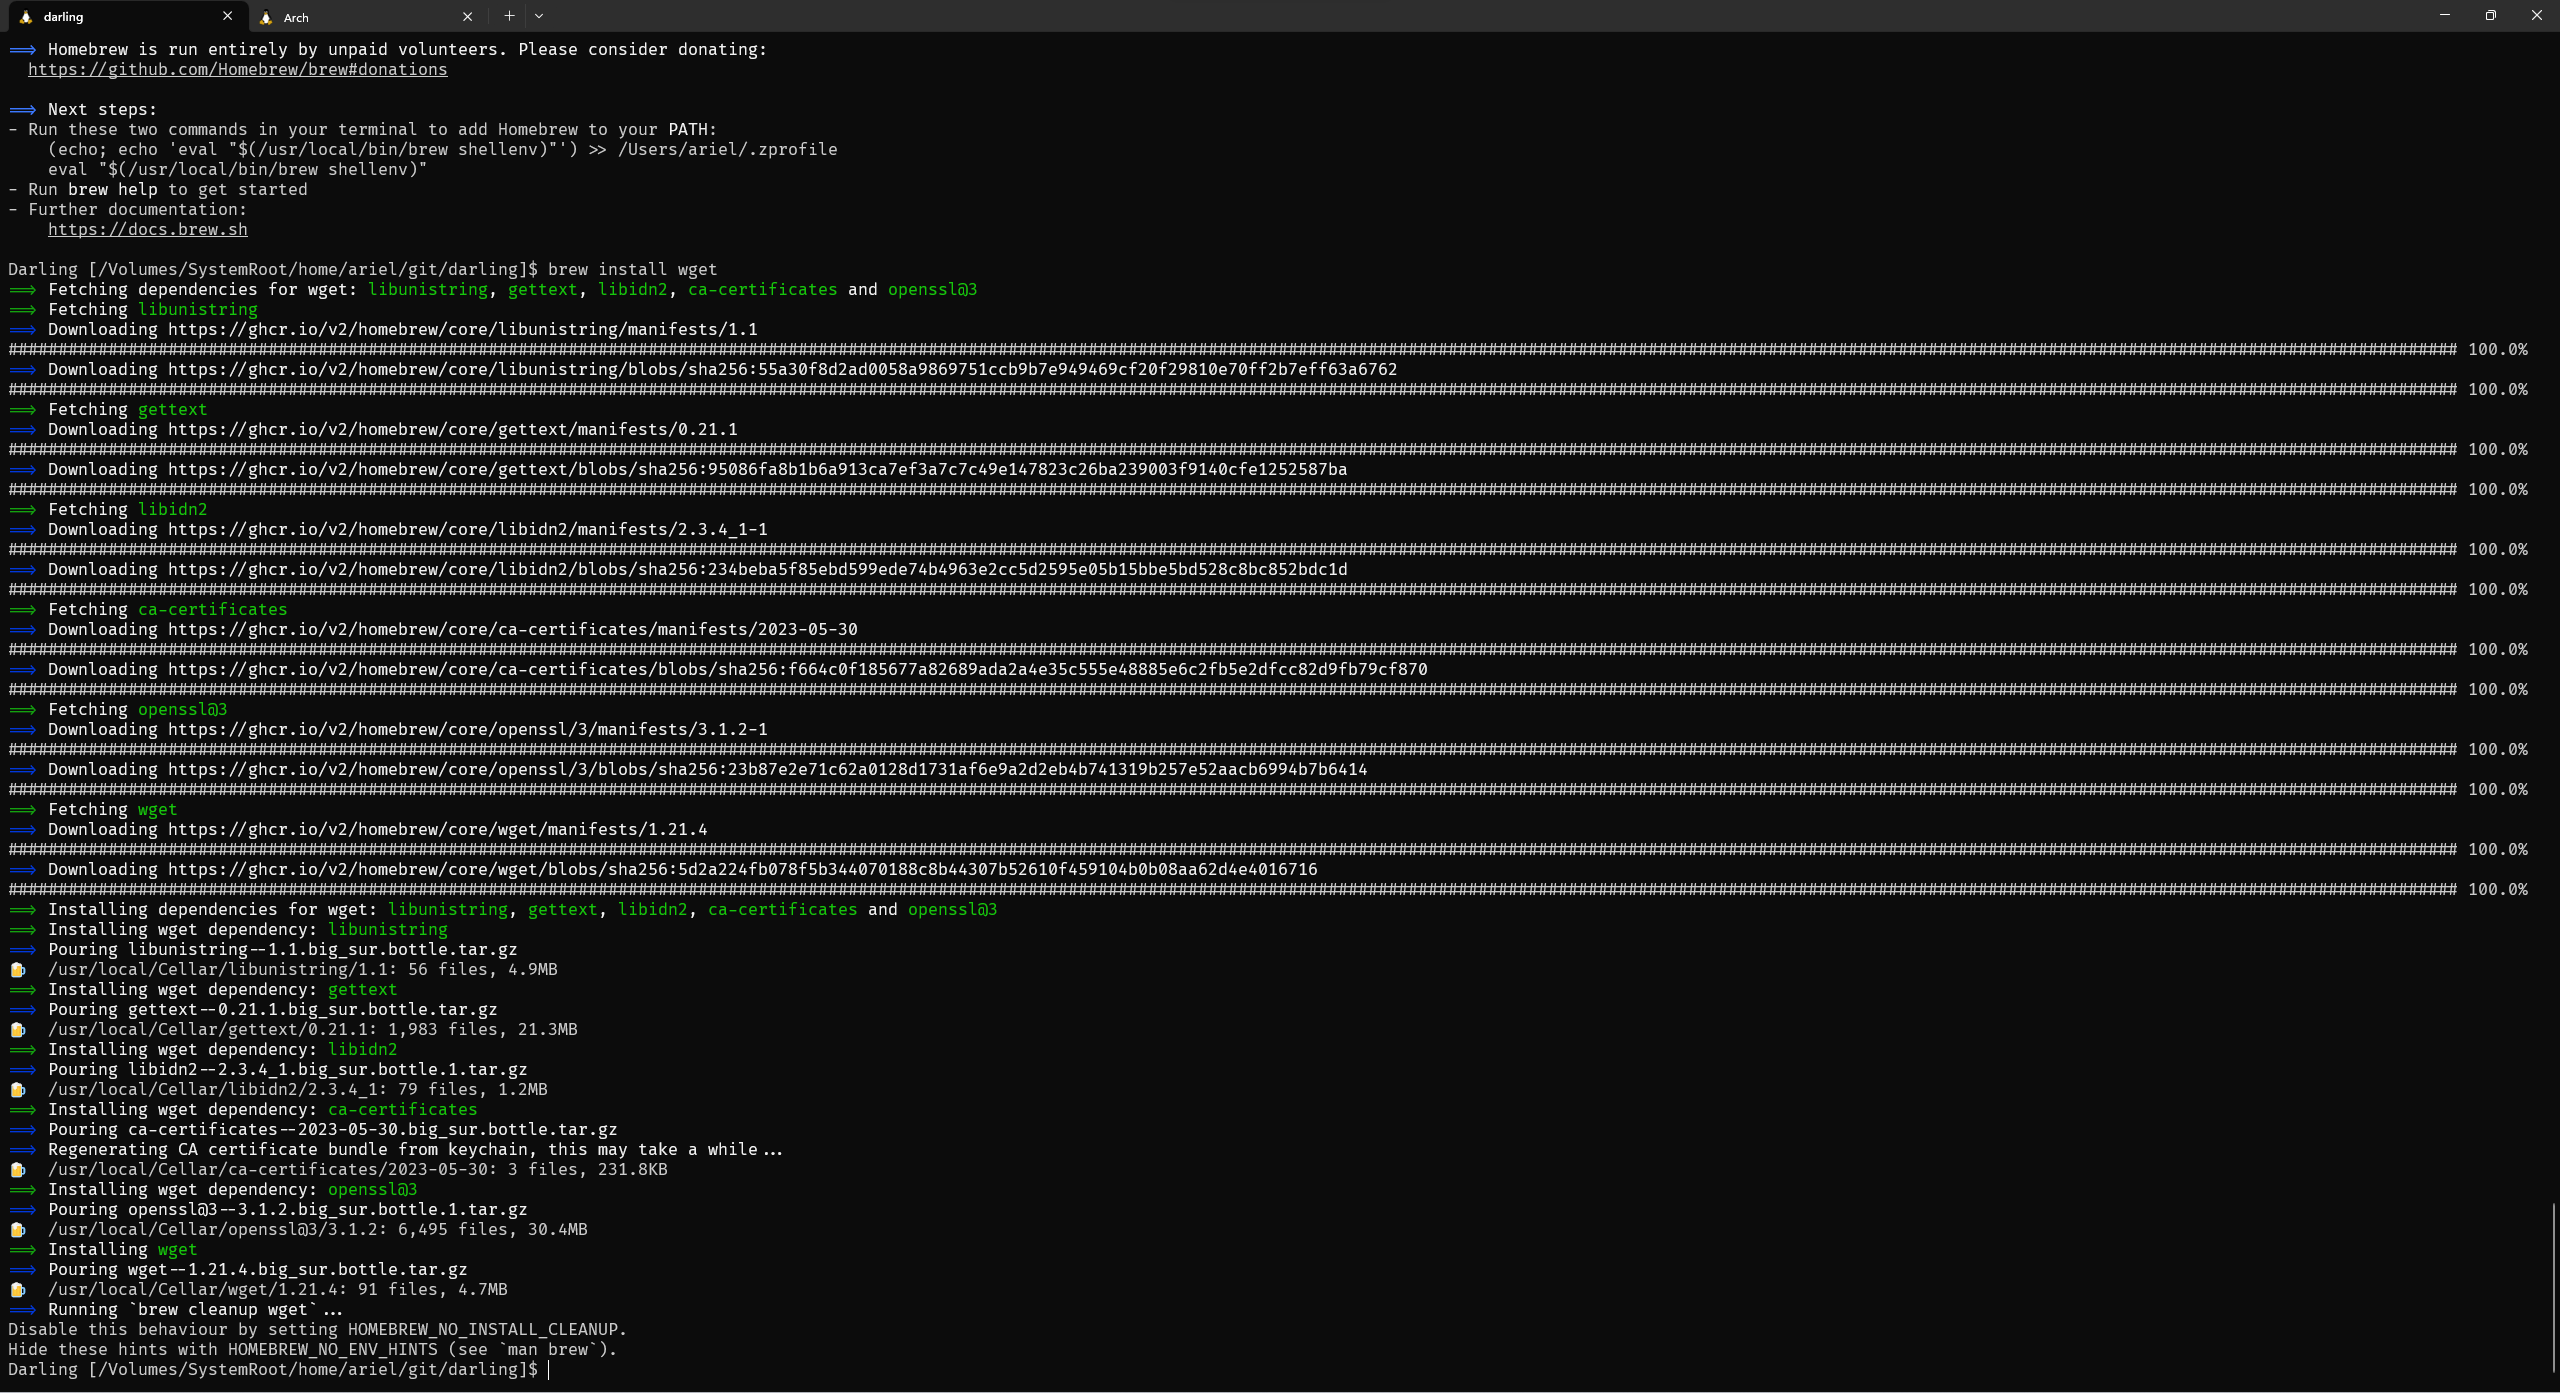 A screenshot of Homebrew installing wget.